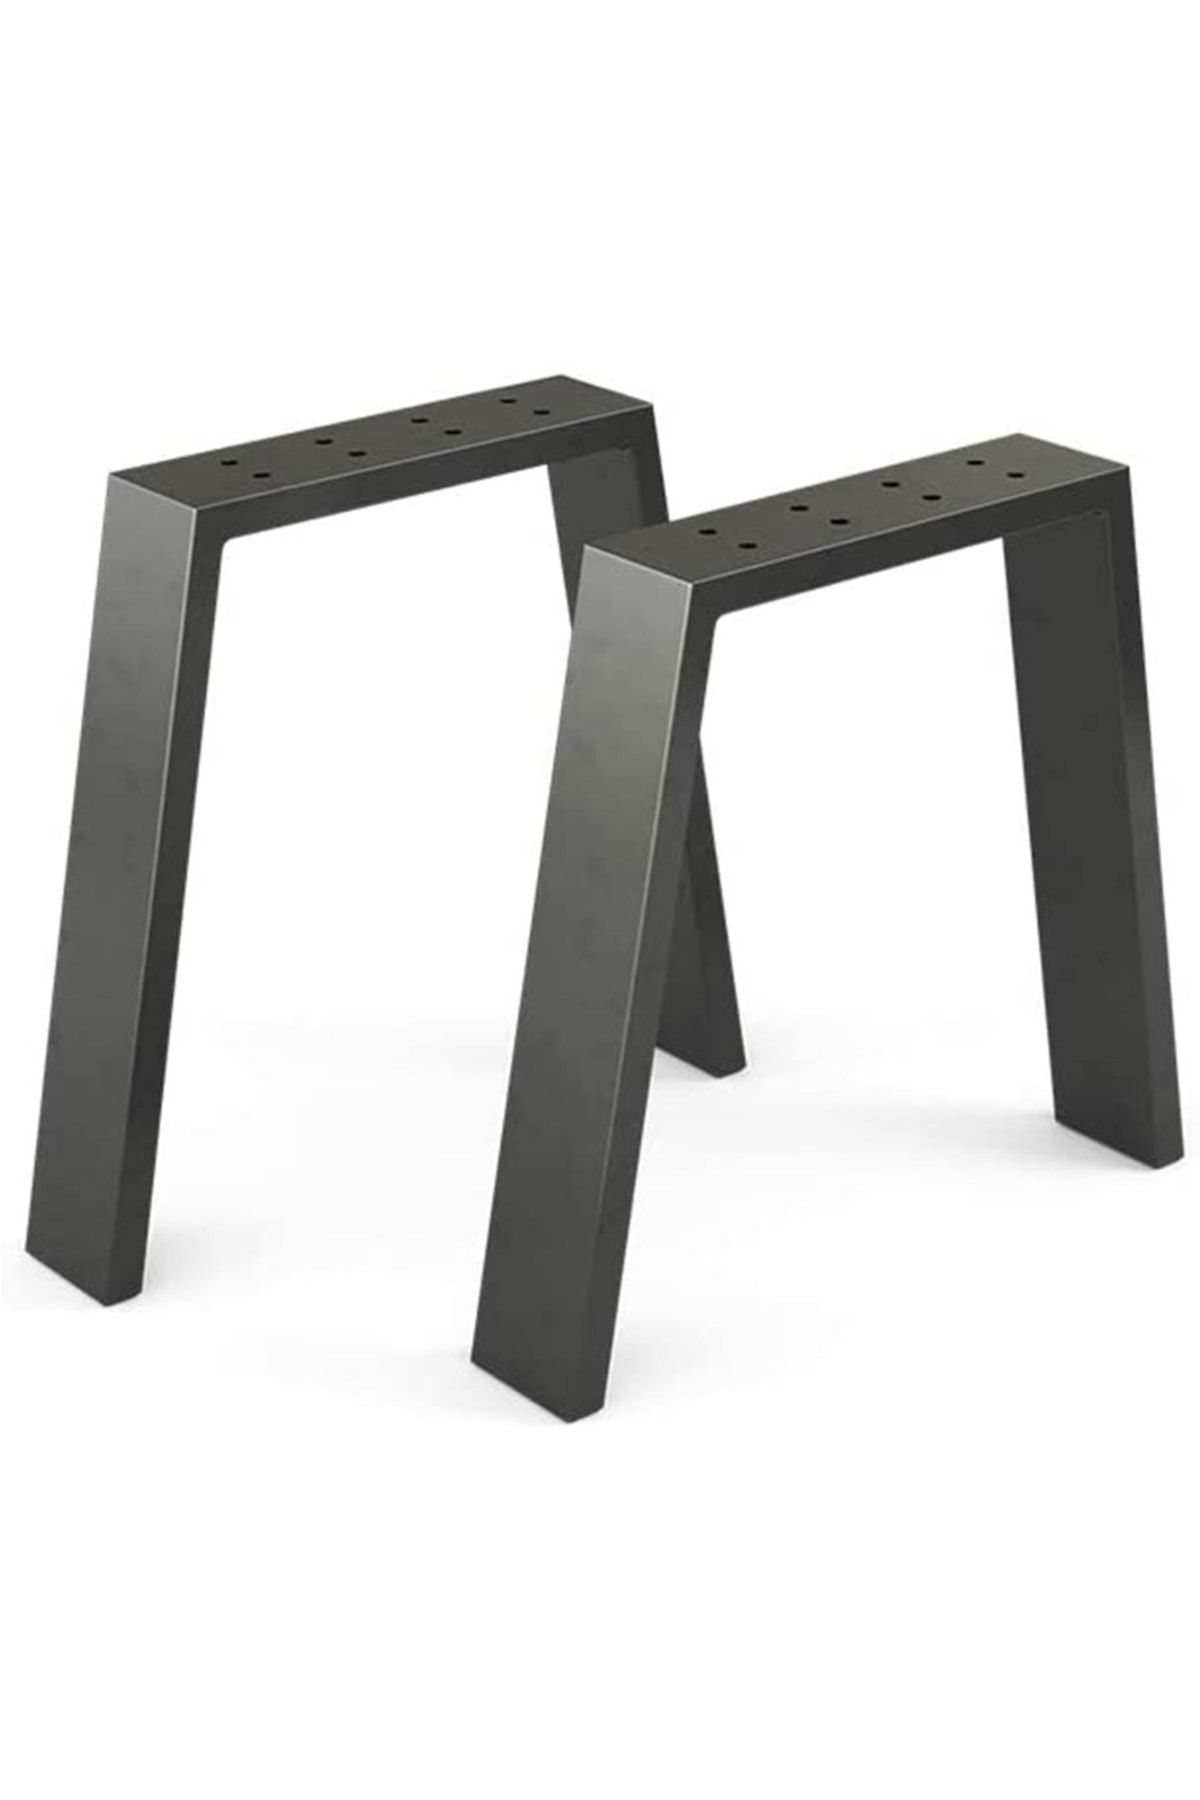 Plus aksesuar Metal Masa-yemek Masası- Çalışma Masası Ayağı 2 Adet Ayak 72 Cm Mobilya Ayağı